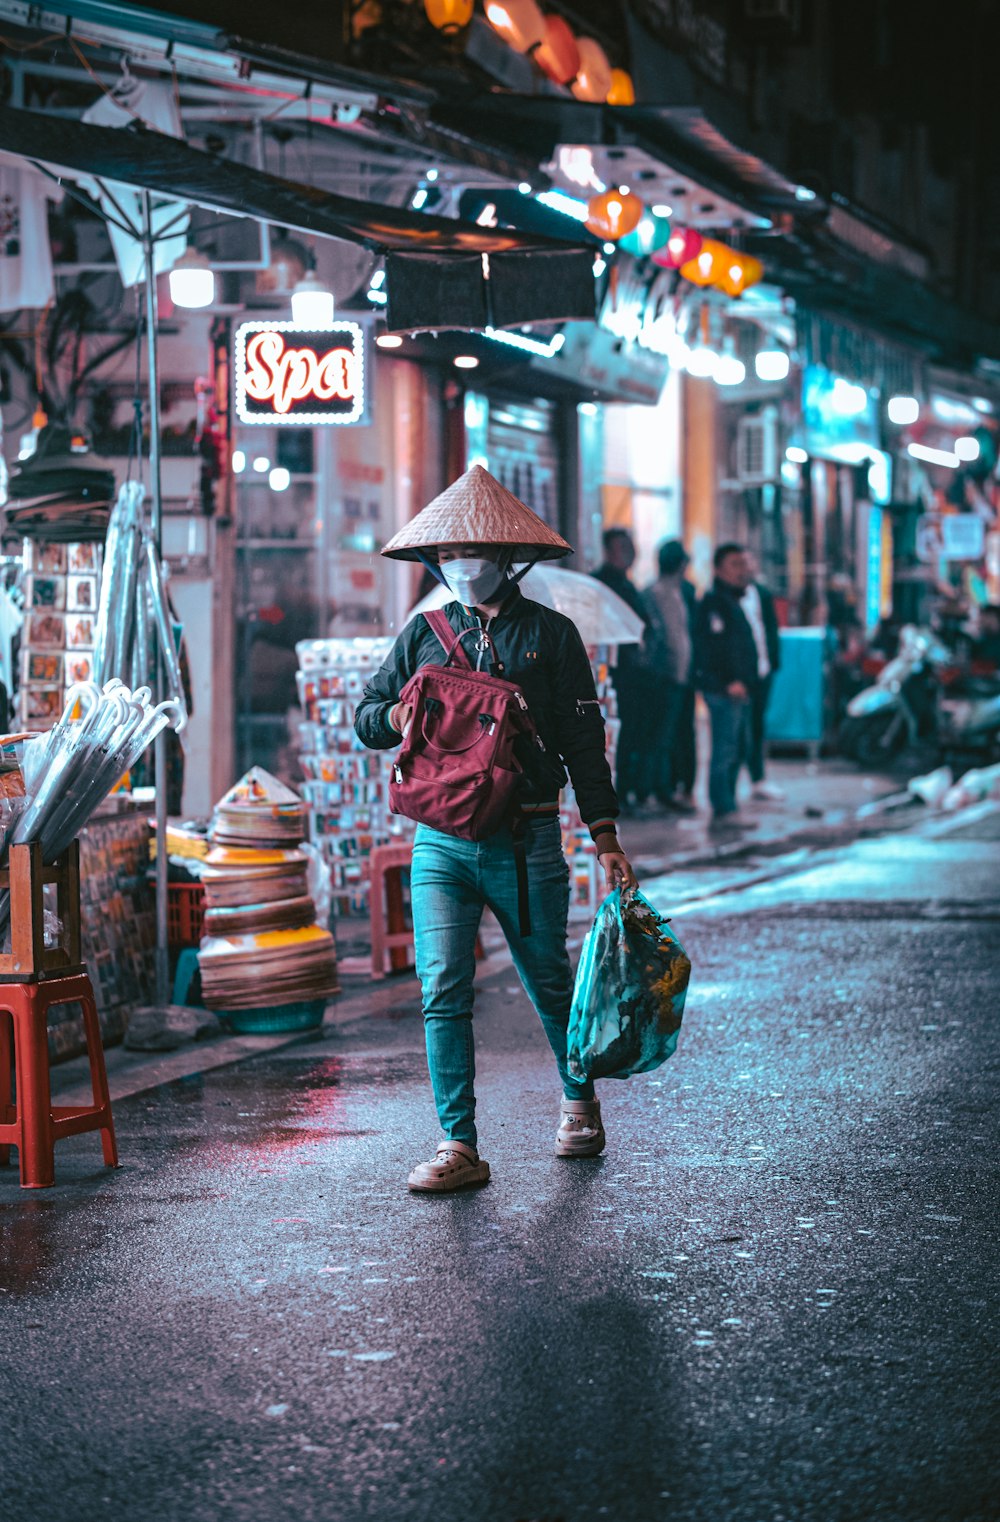 a man walking down a street holding an umbrella